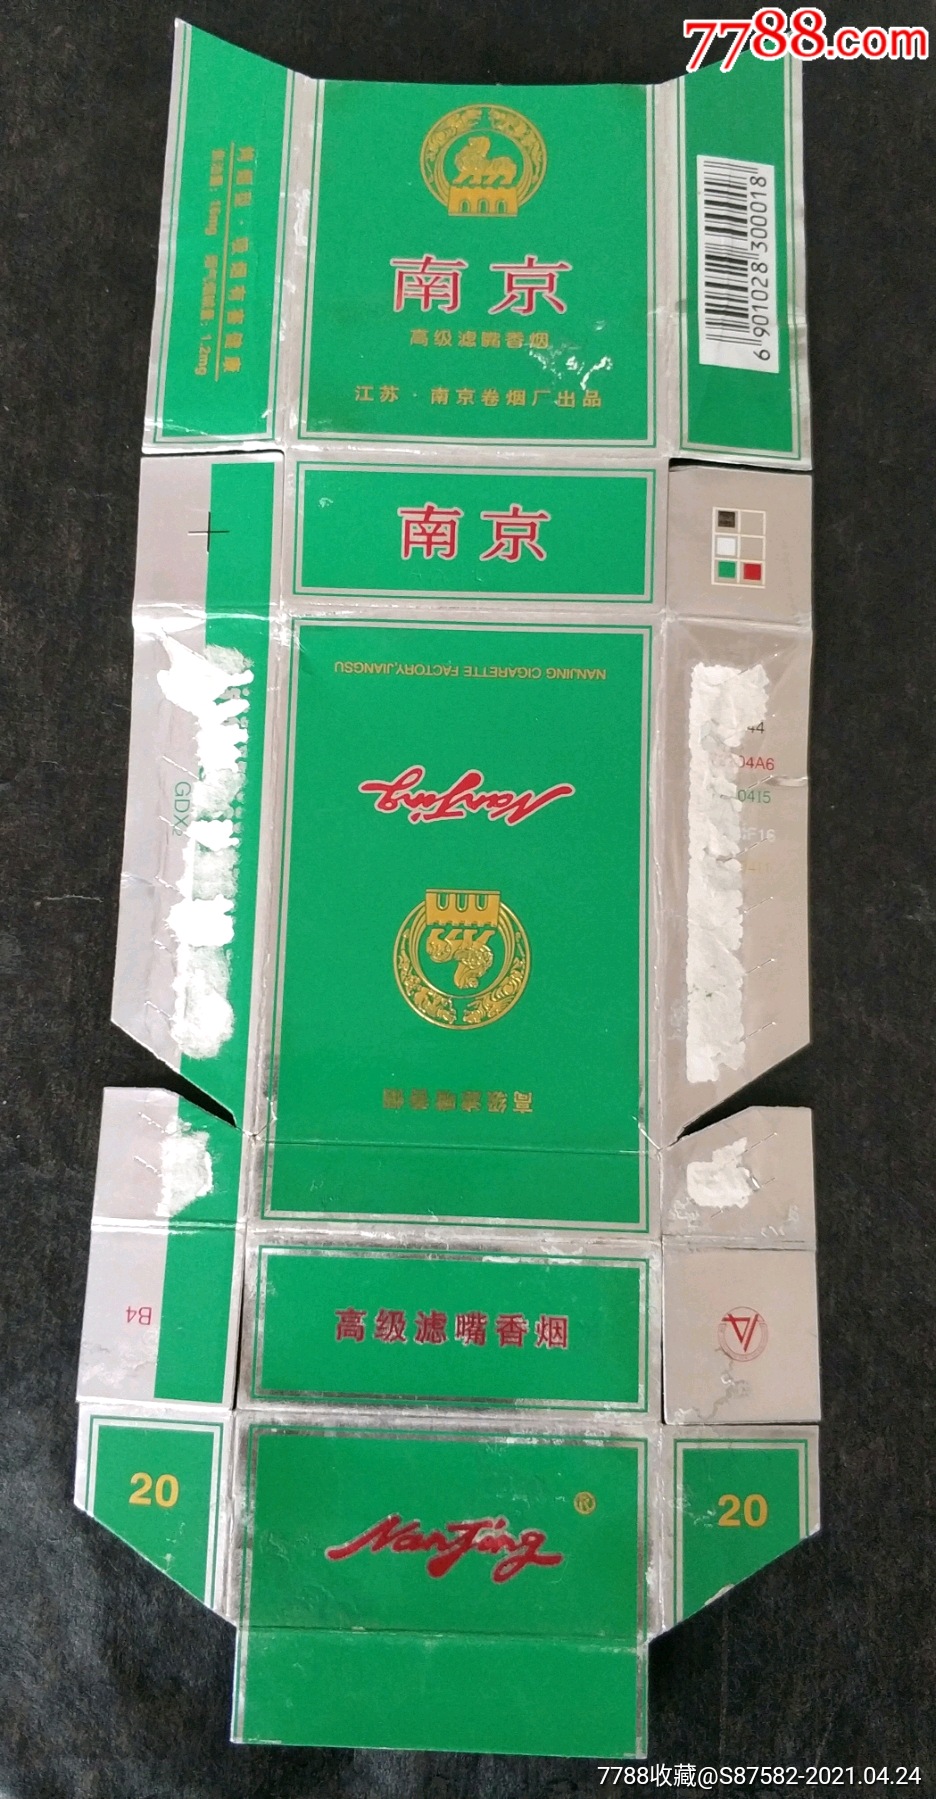 浅绿色盒子的细烟图片图片